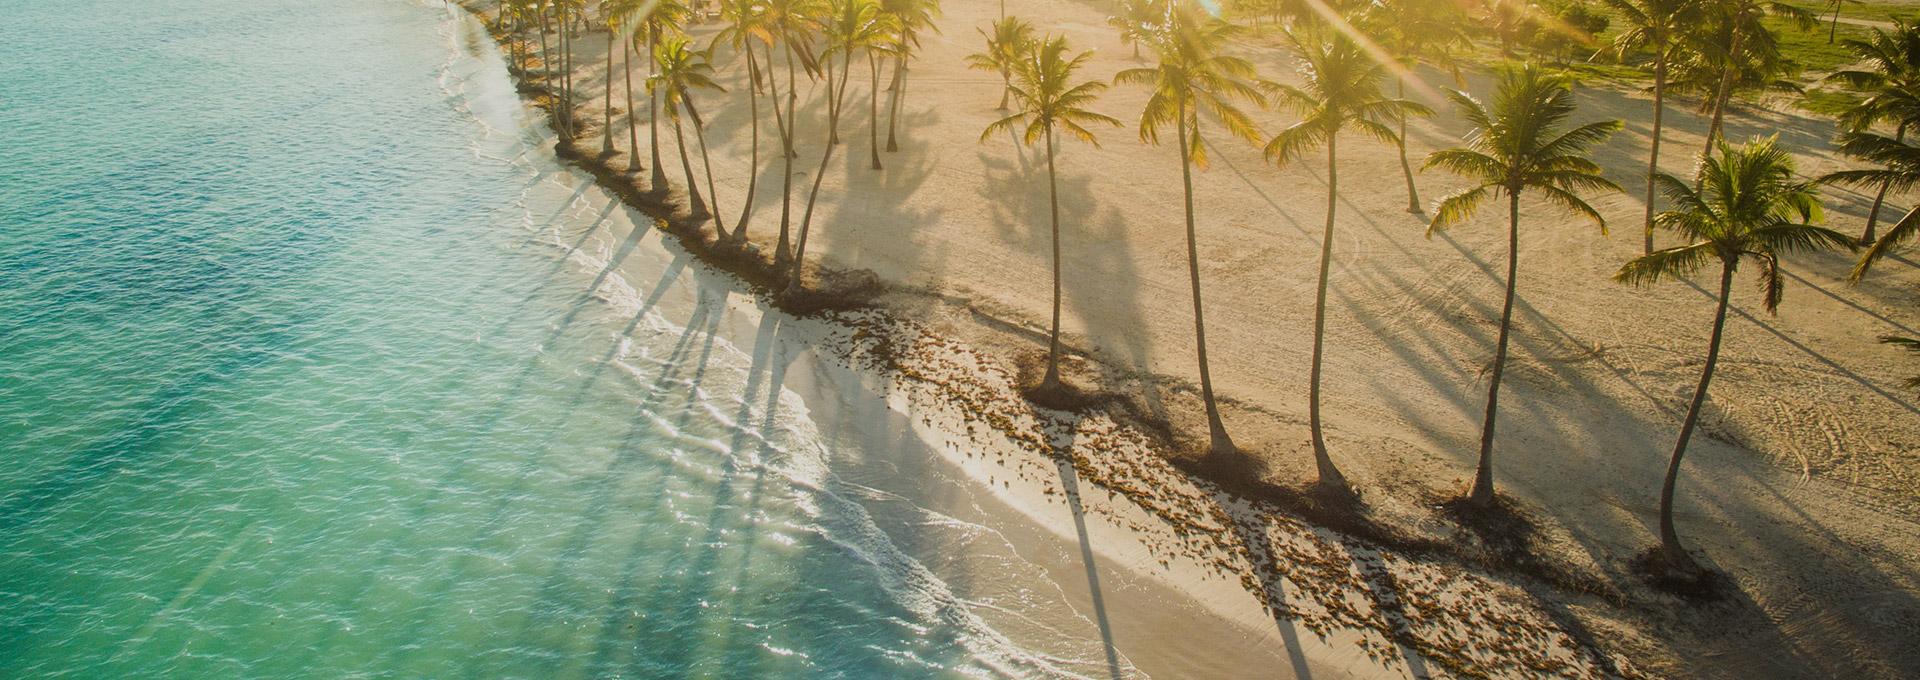 Dominican Republic shoreline